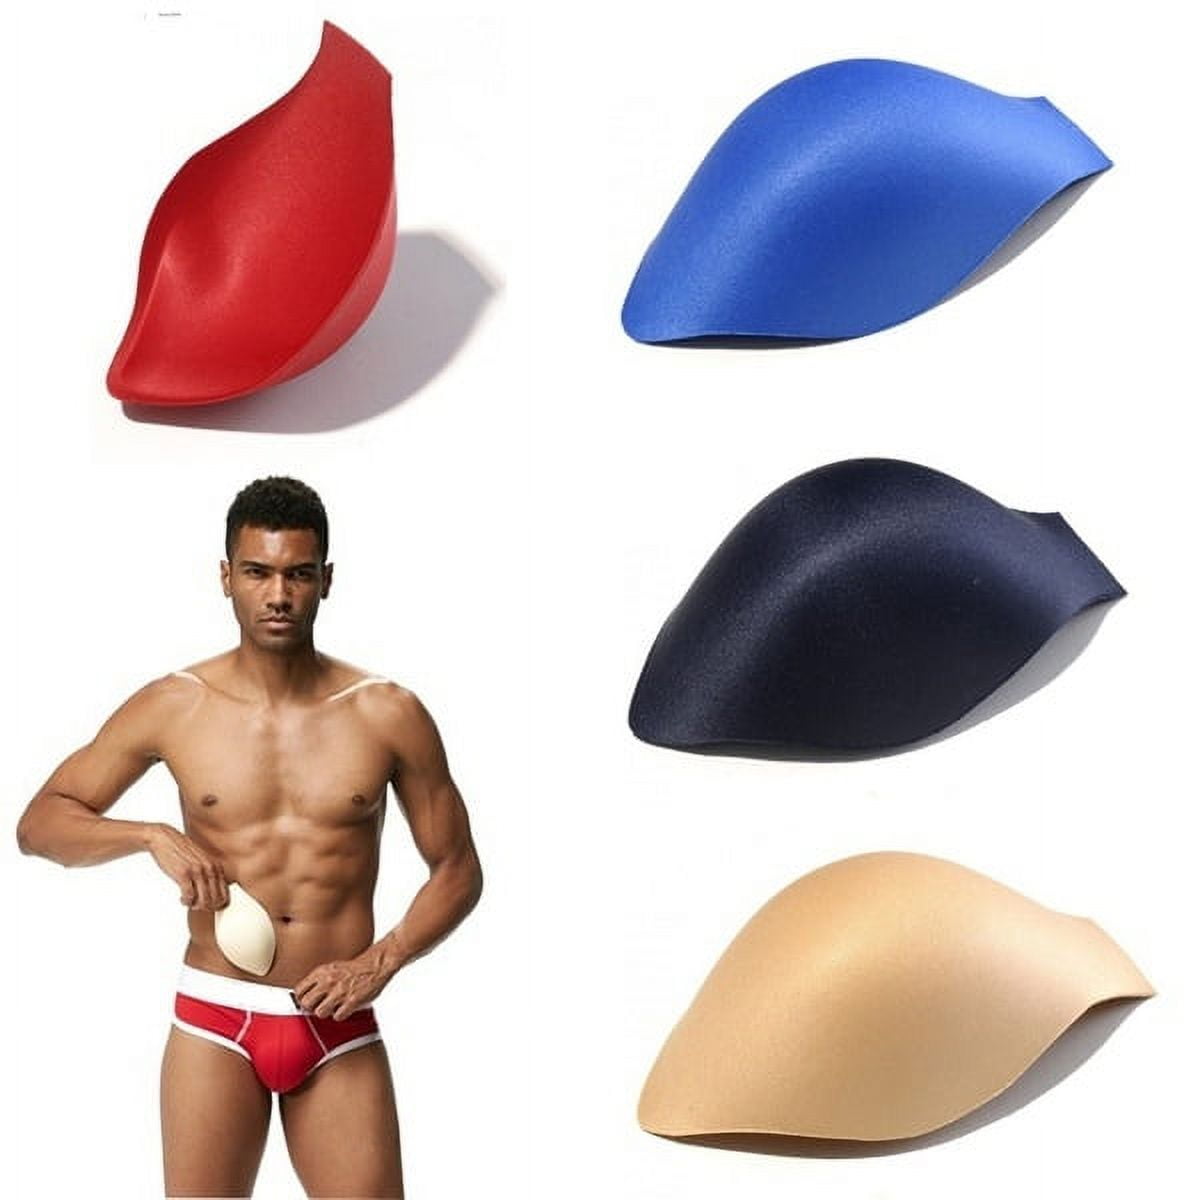 Men Boys Swim Briefs Pad Men Swimwear Trunks Underwear Insert Swimsuit  Enlarge Pouch Pad